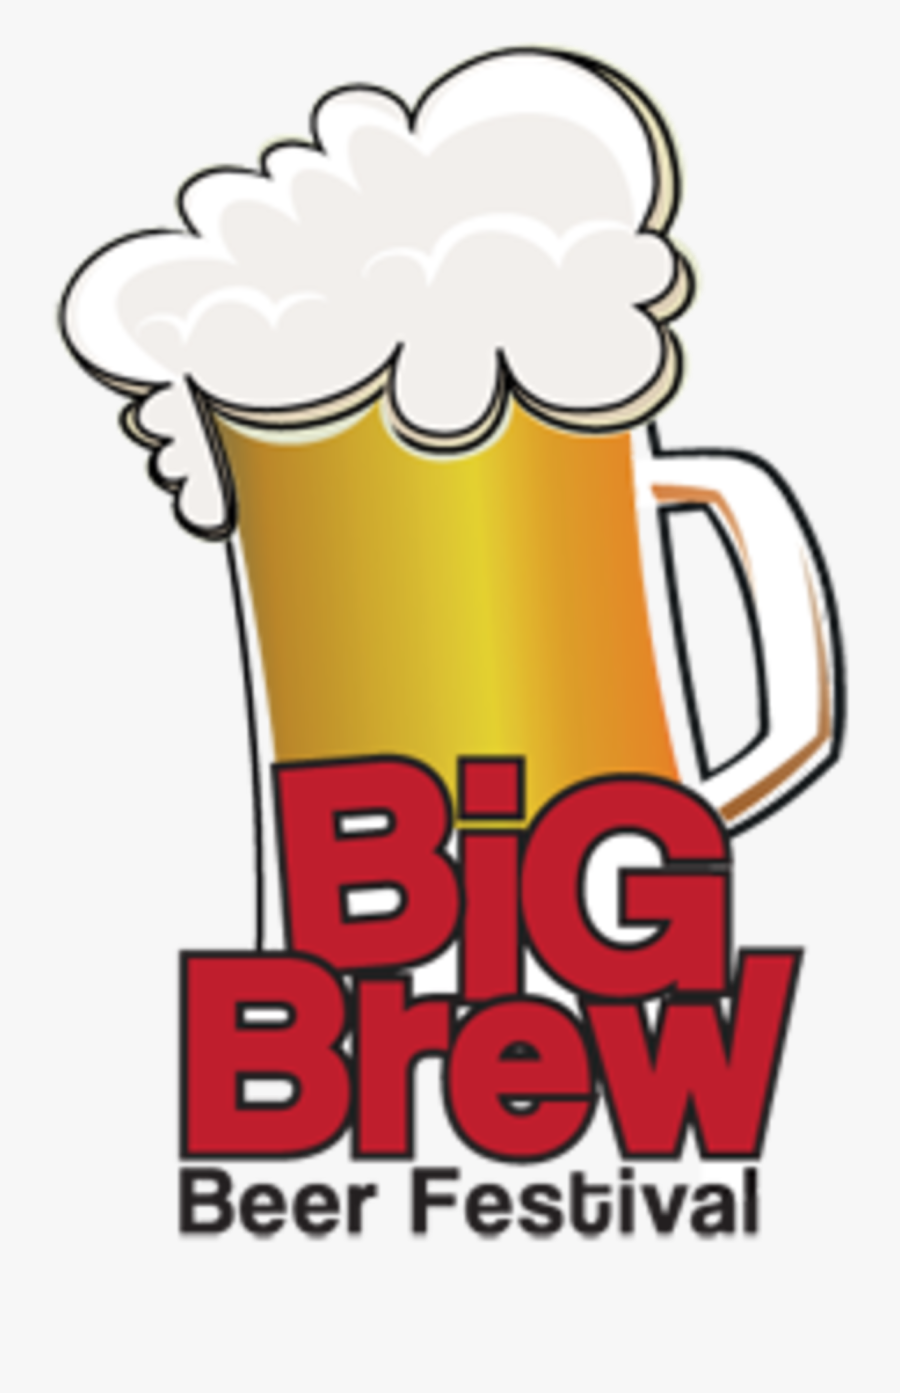 Big Brew Nj - Morristown Big Brew Festival, Transparent Clipart